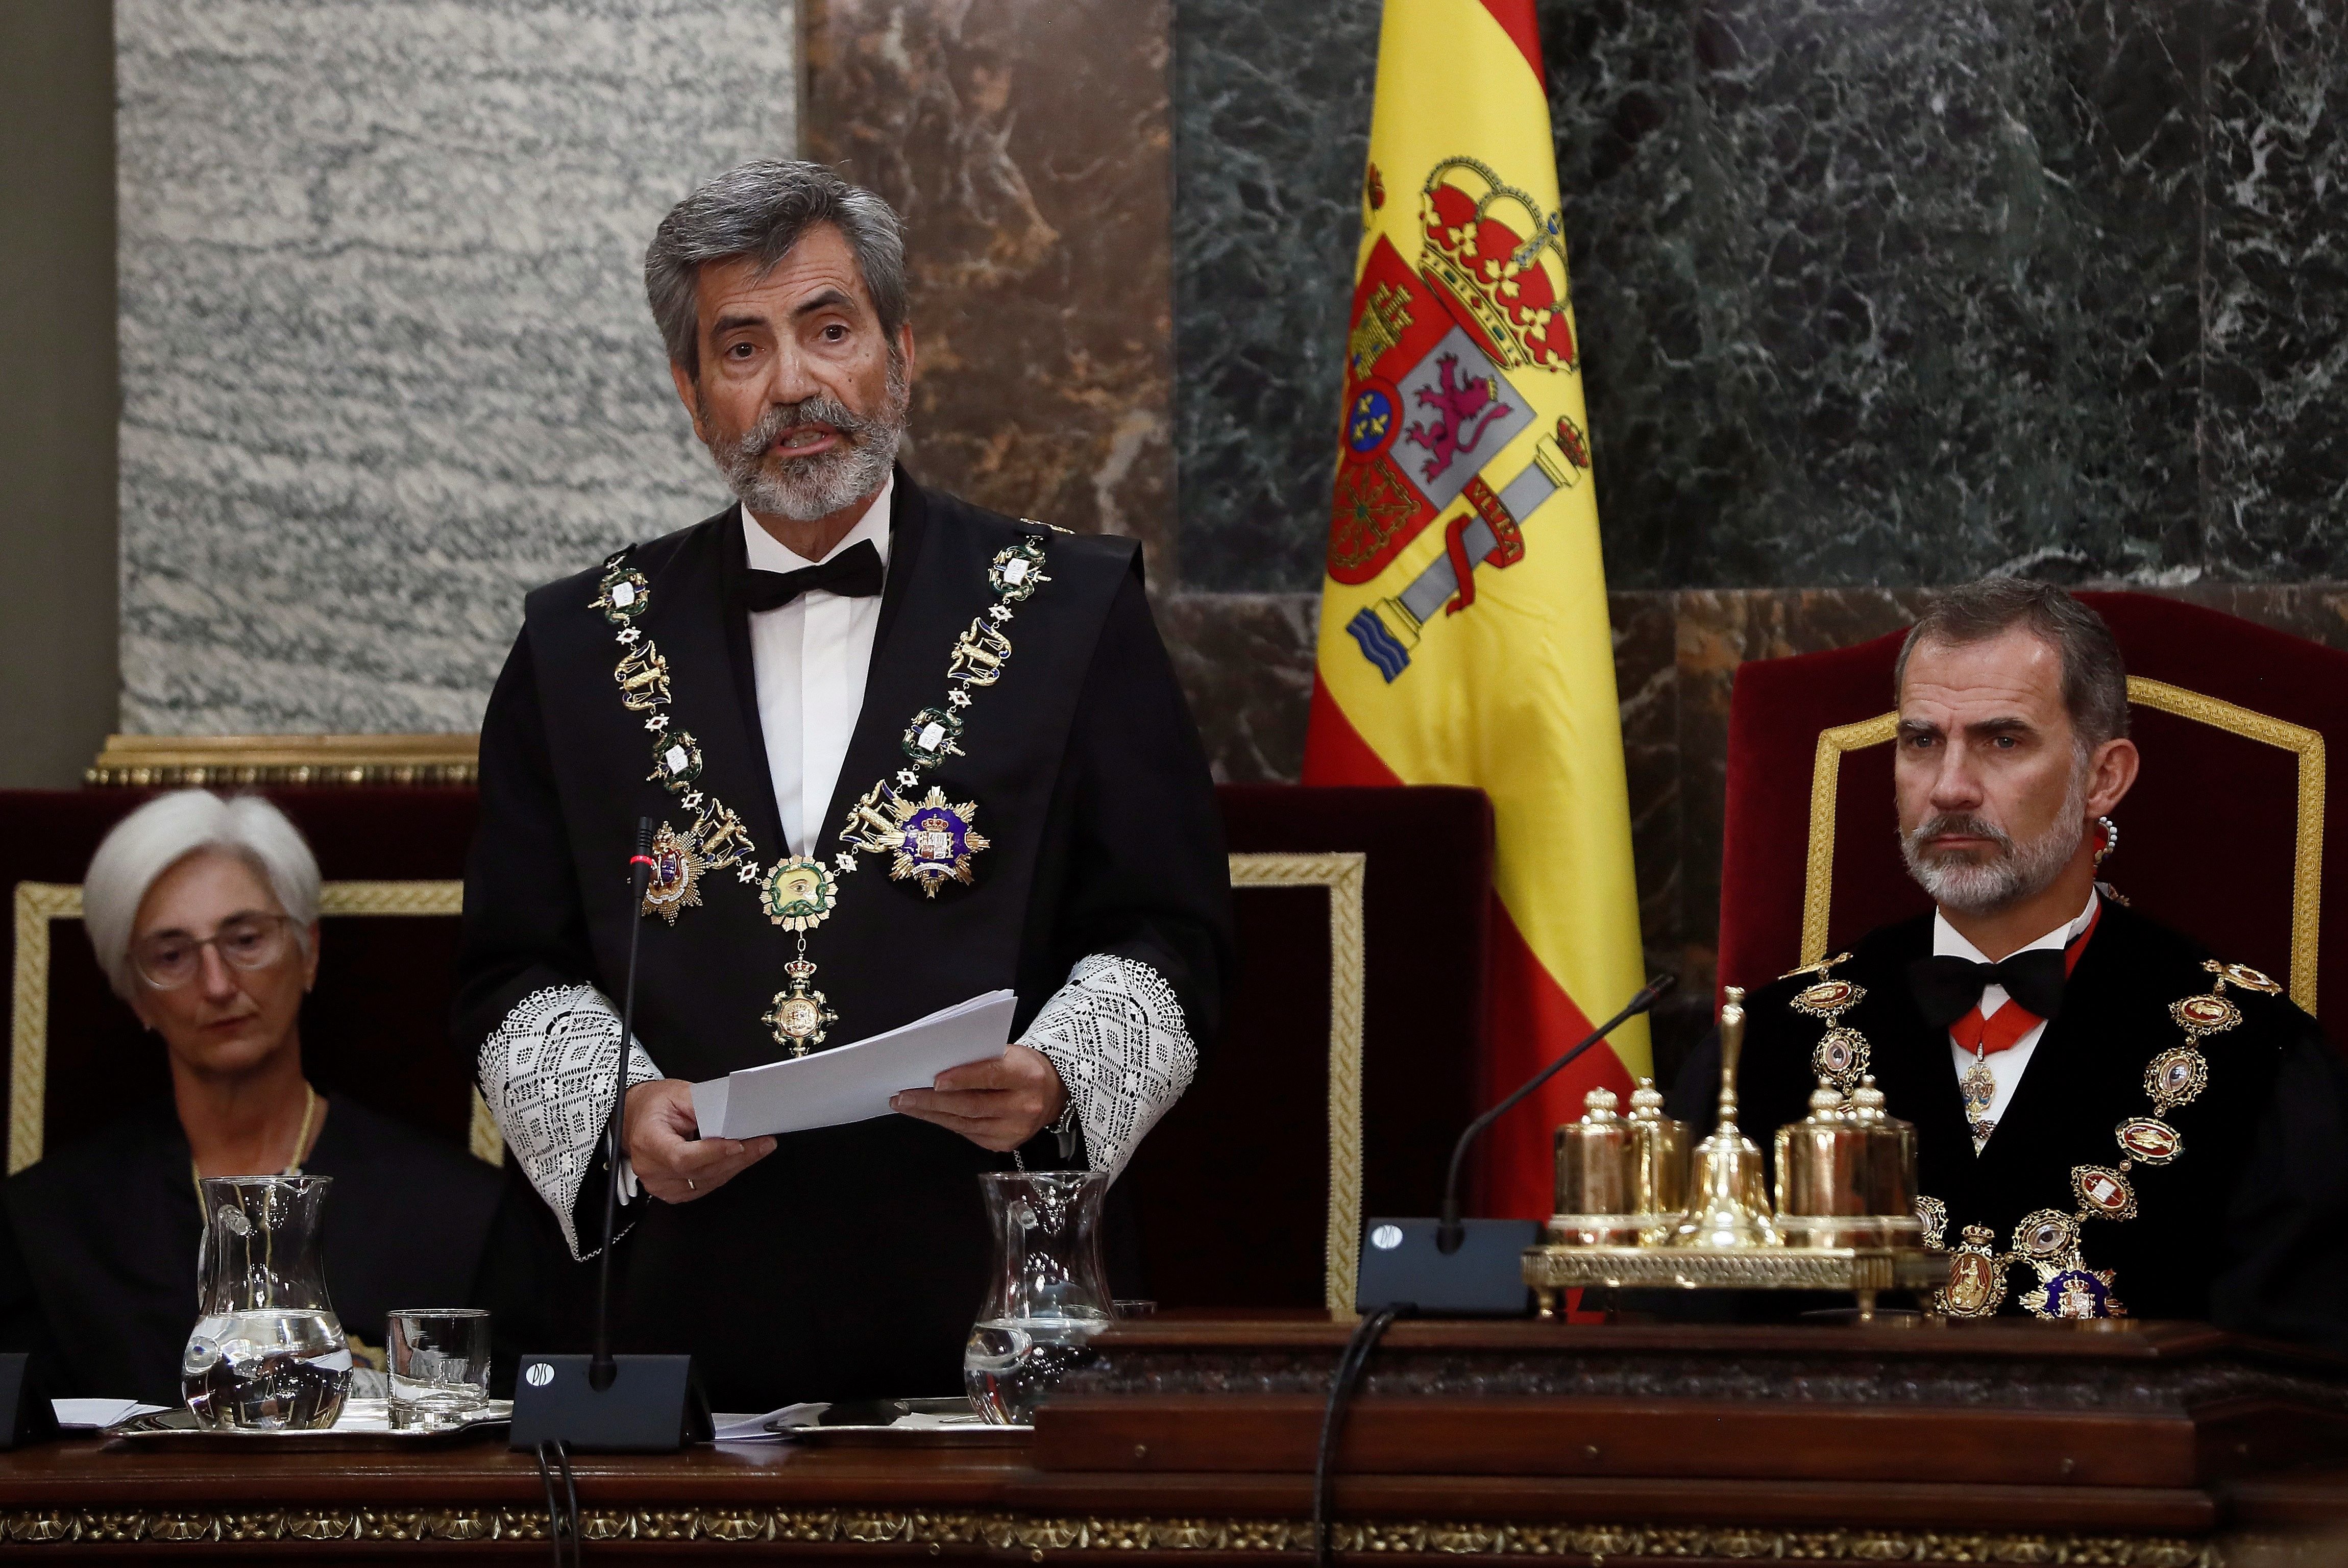 La coalició dels jutges: l'Estat en contra que amenaça Sánchez i Iglesias